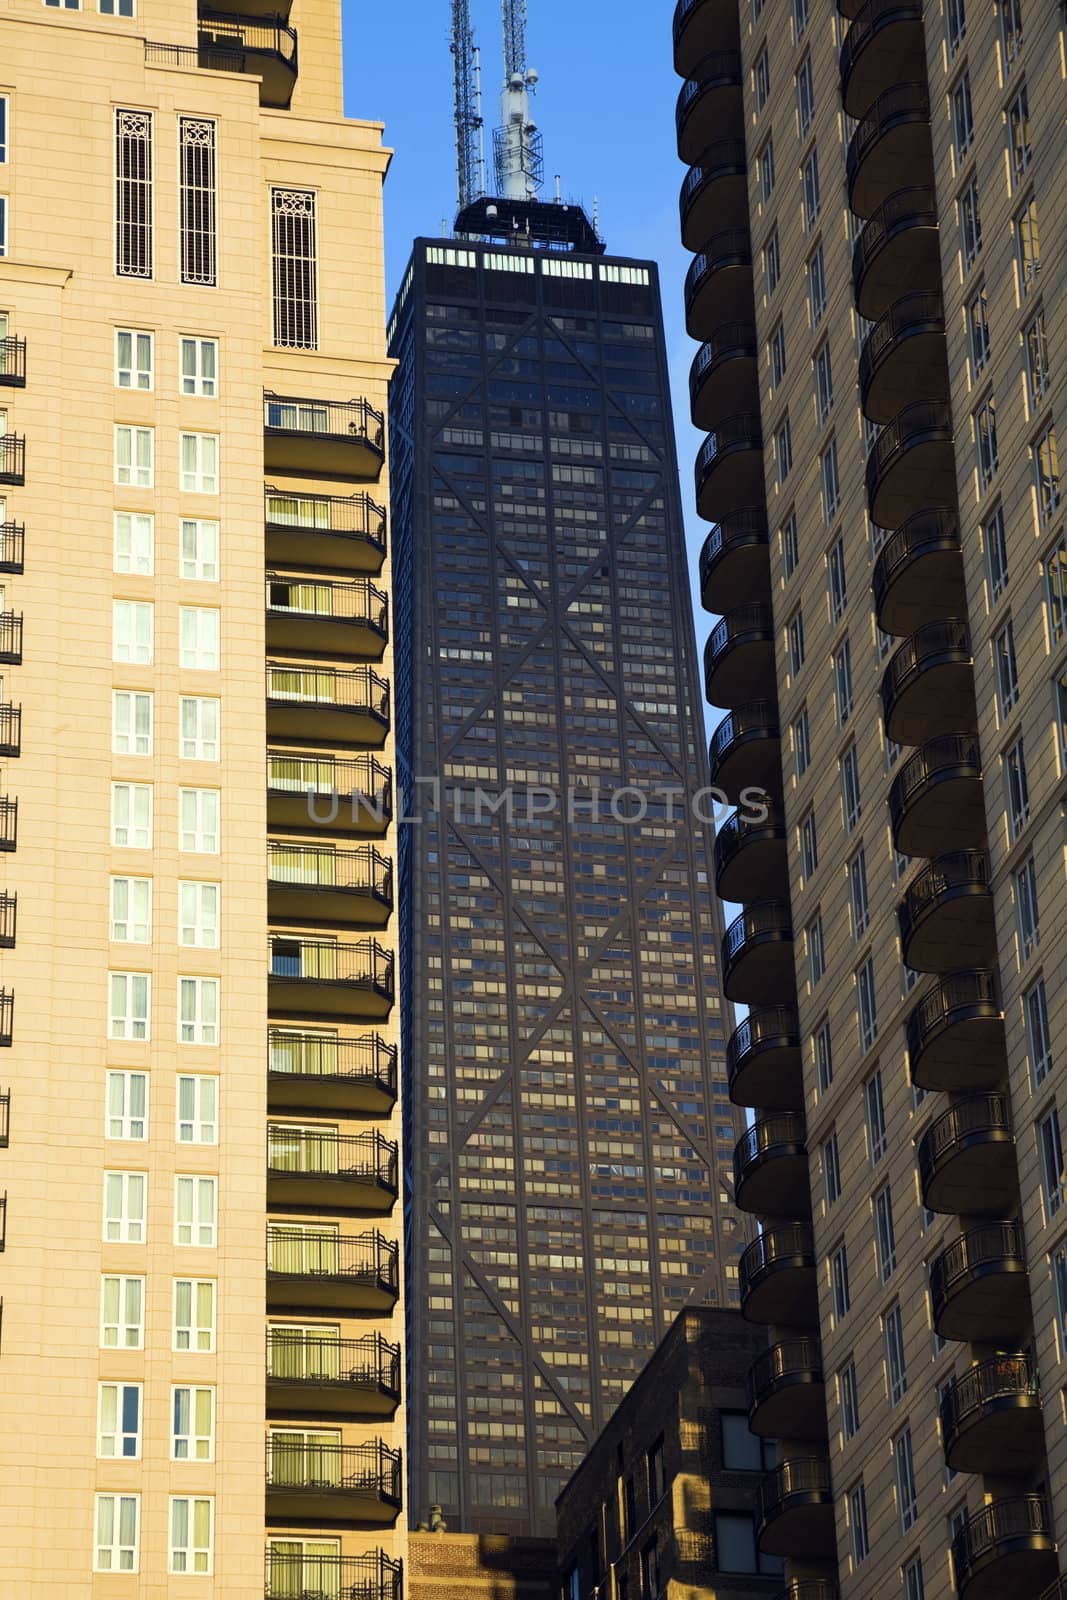 Hancock Tower squized between skyscrapers by benkrut